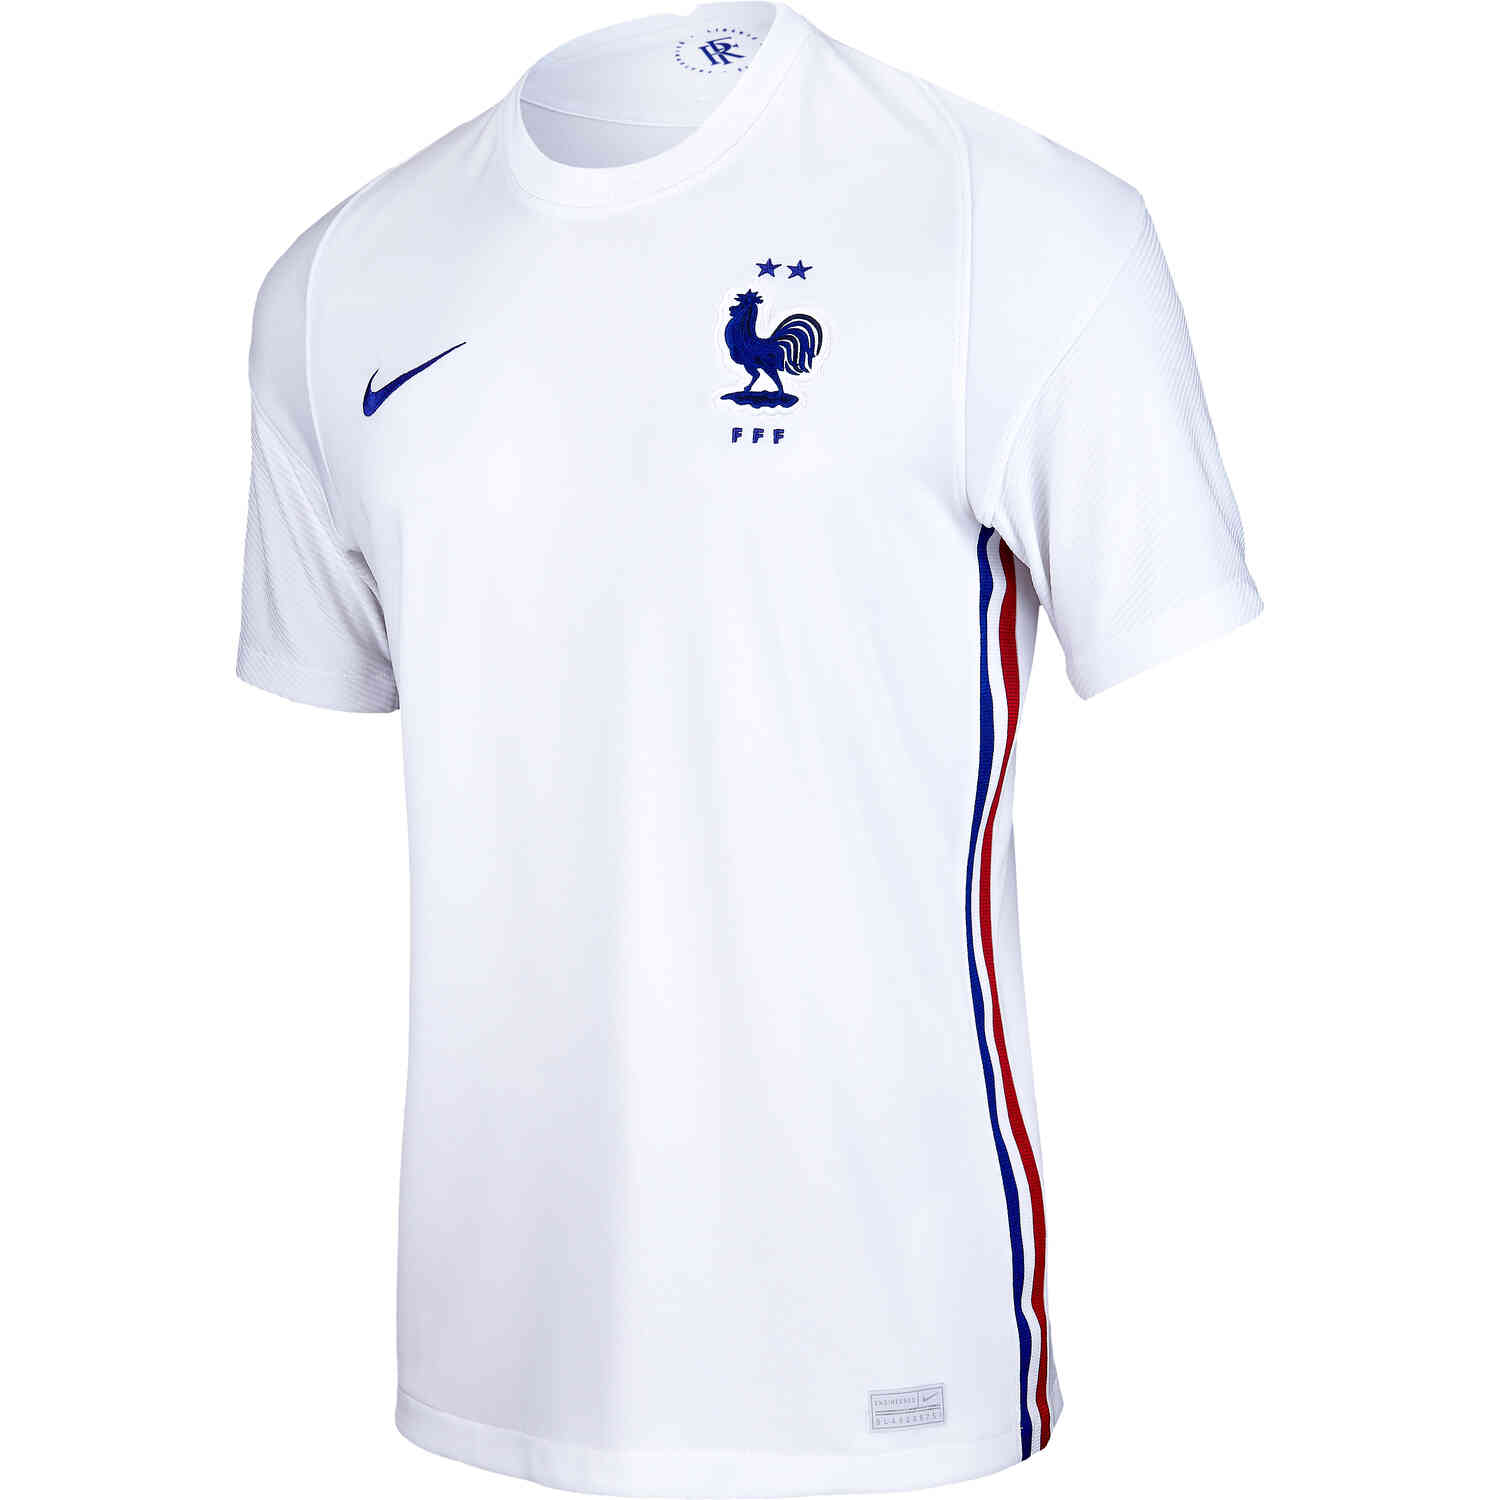 2020 Nike France Away Jersey - SoccerPro